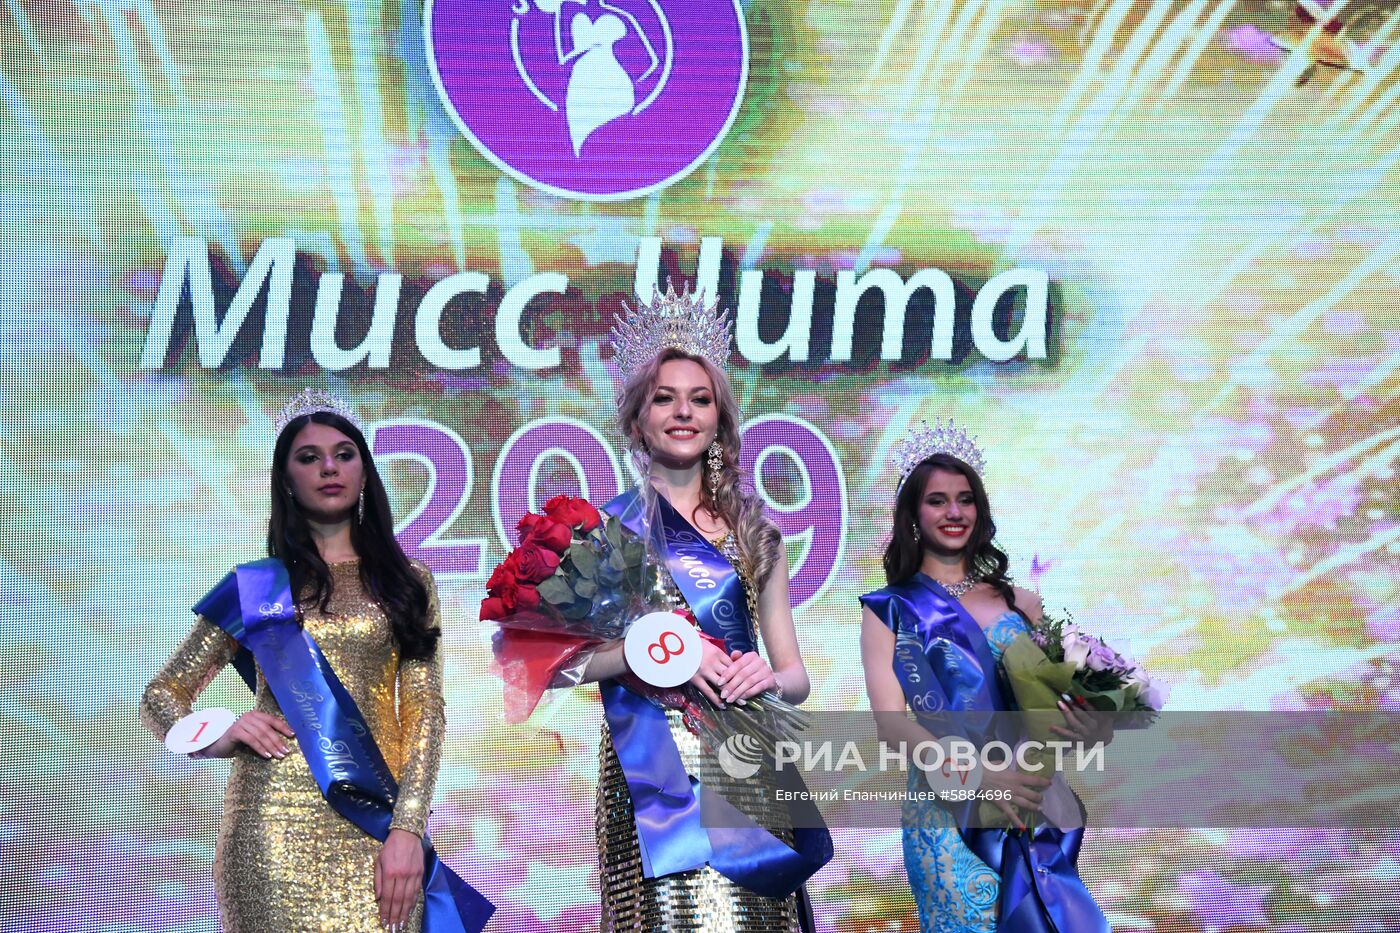 Конкурс красоты "Мисс Чита- 2019"